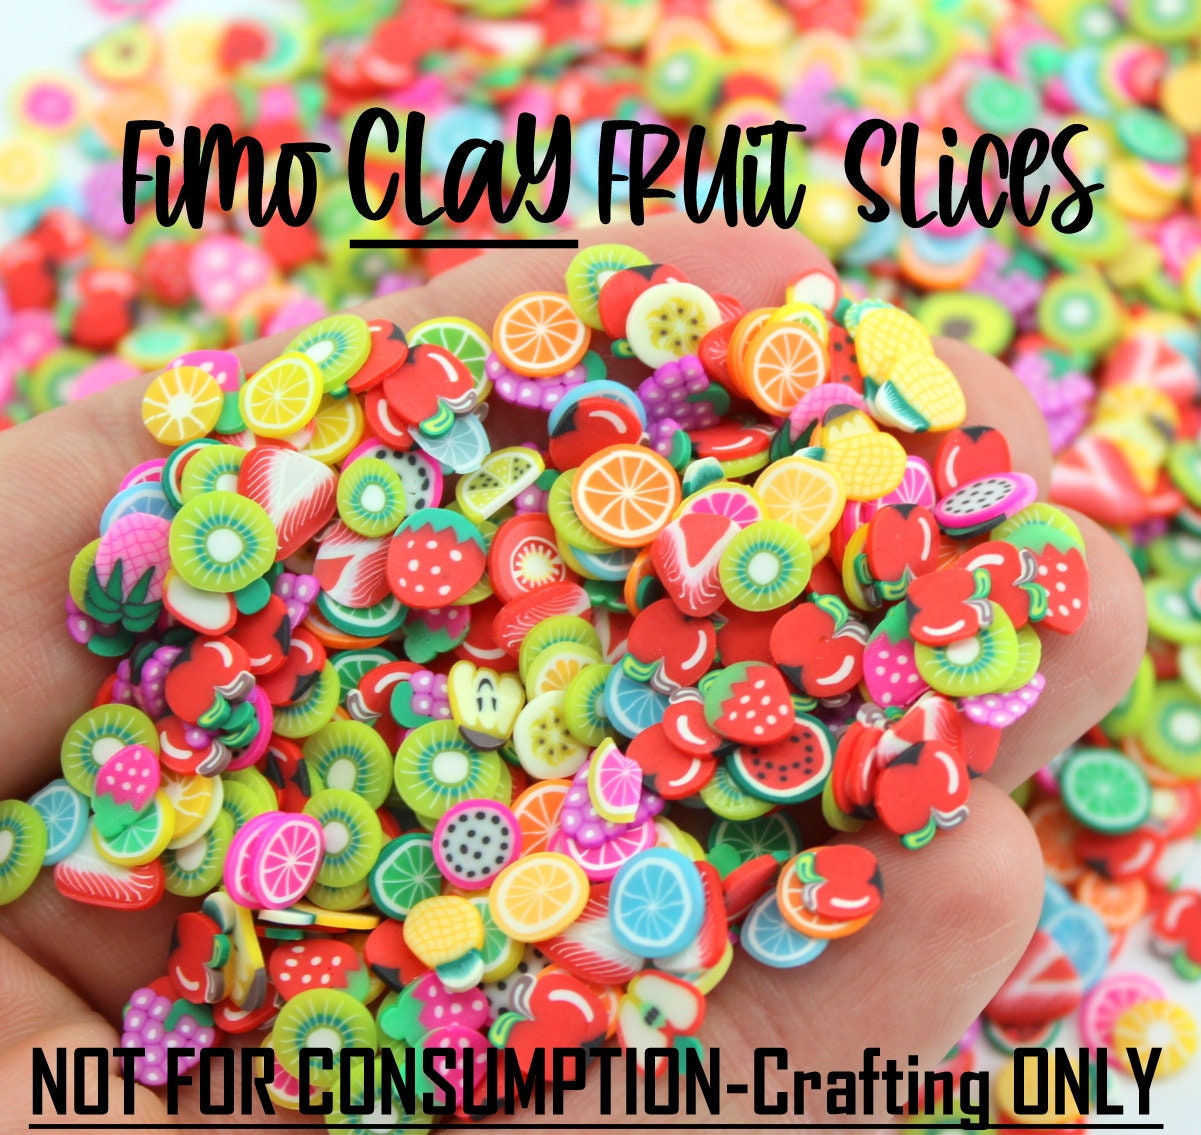 20g Assorted Slime Slices DIY Crafts Decorations Fruit Slices